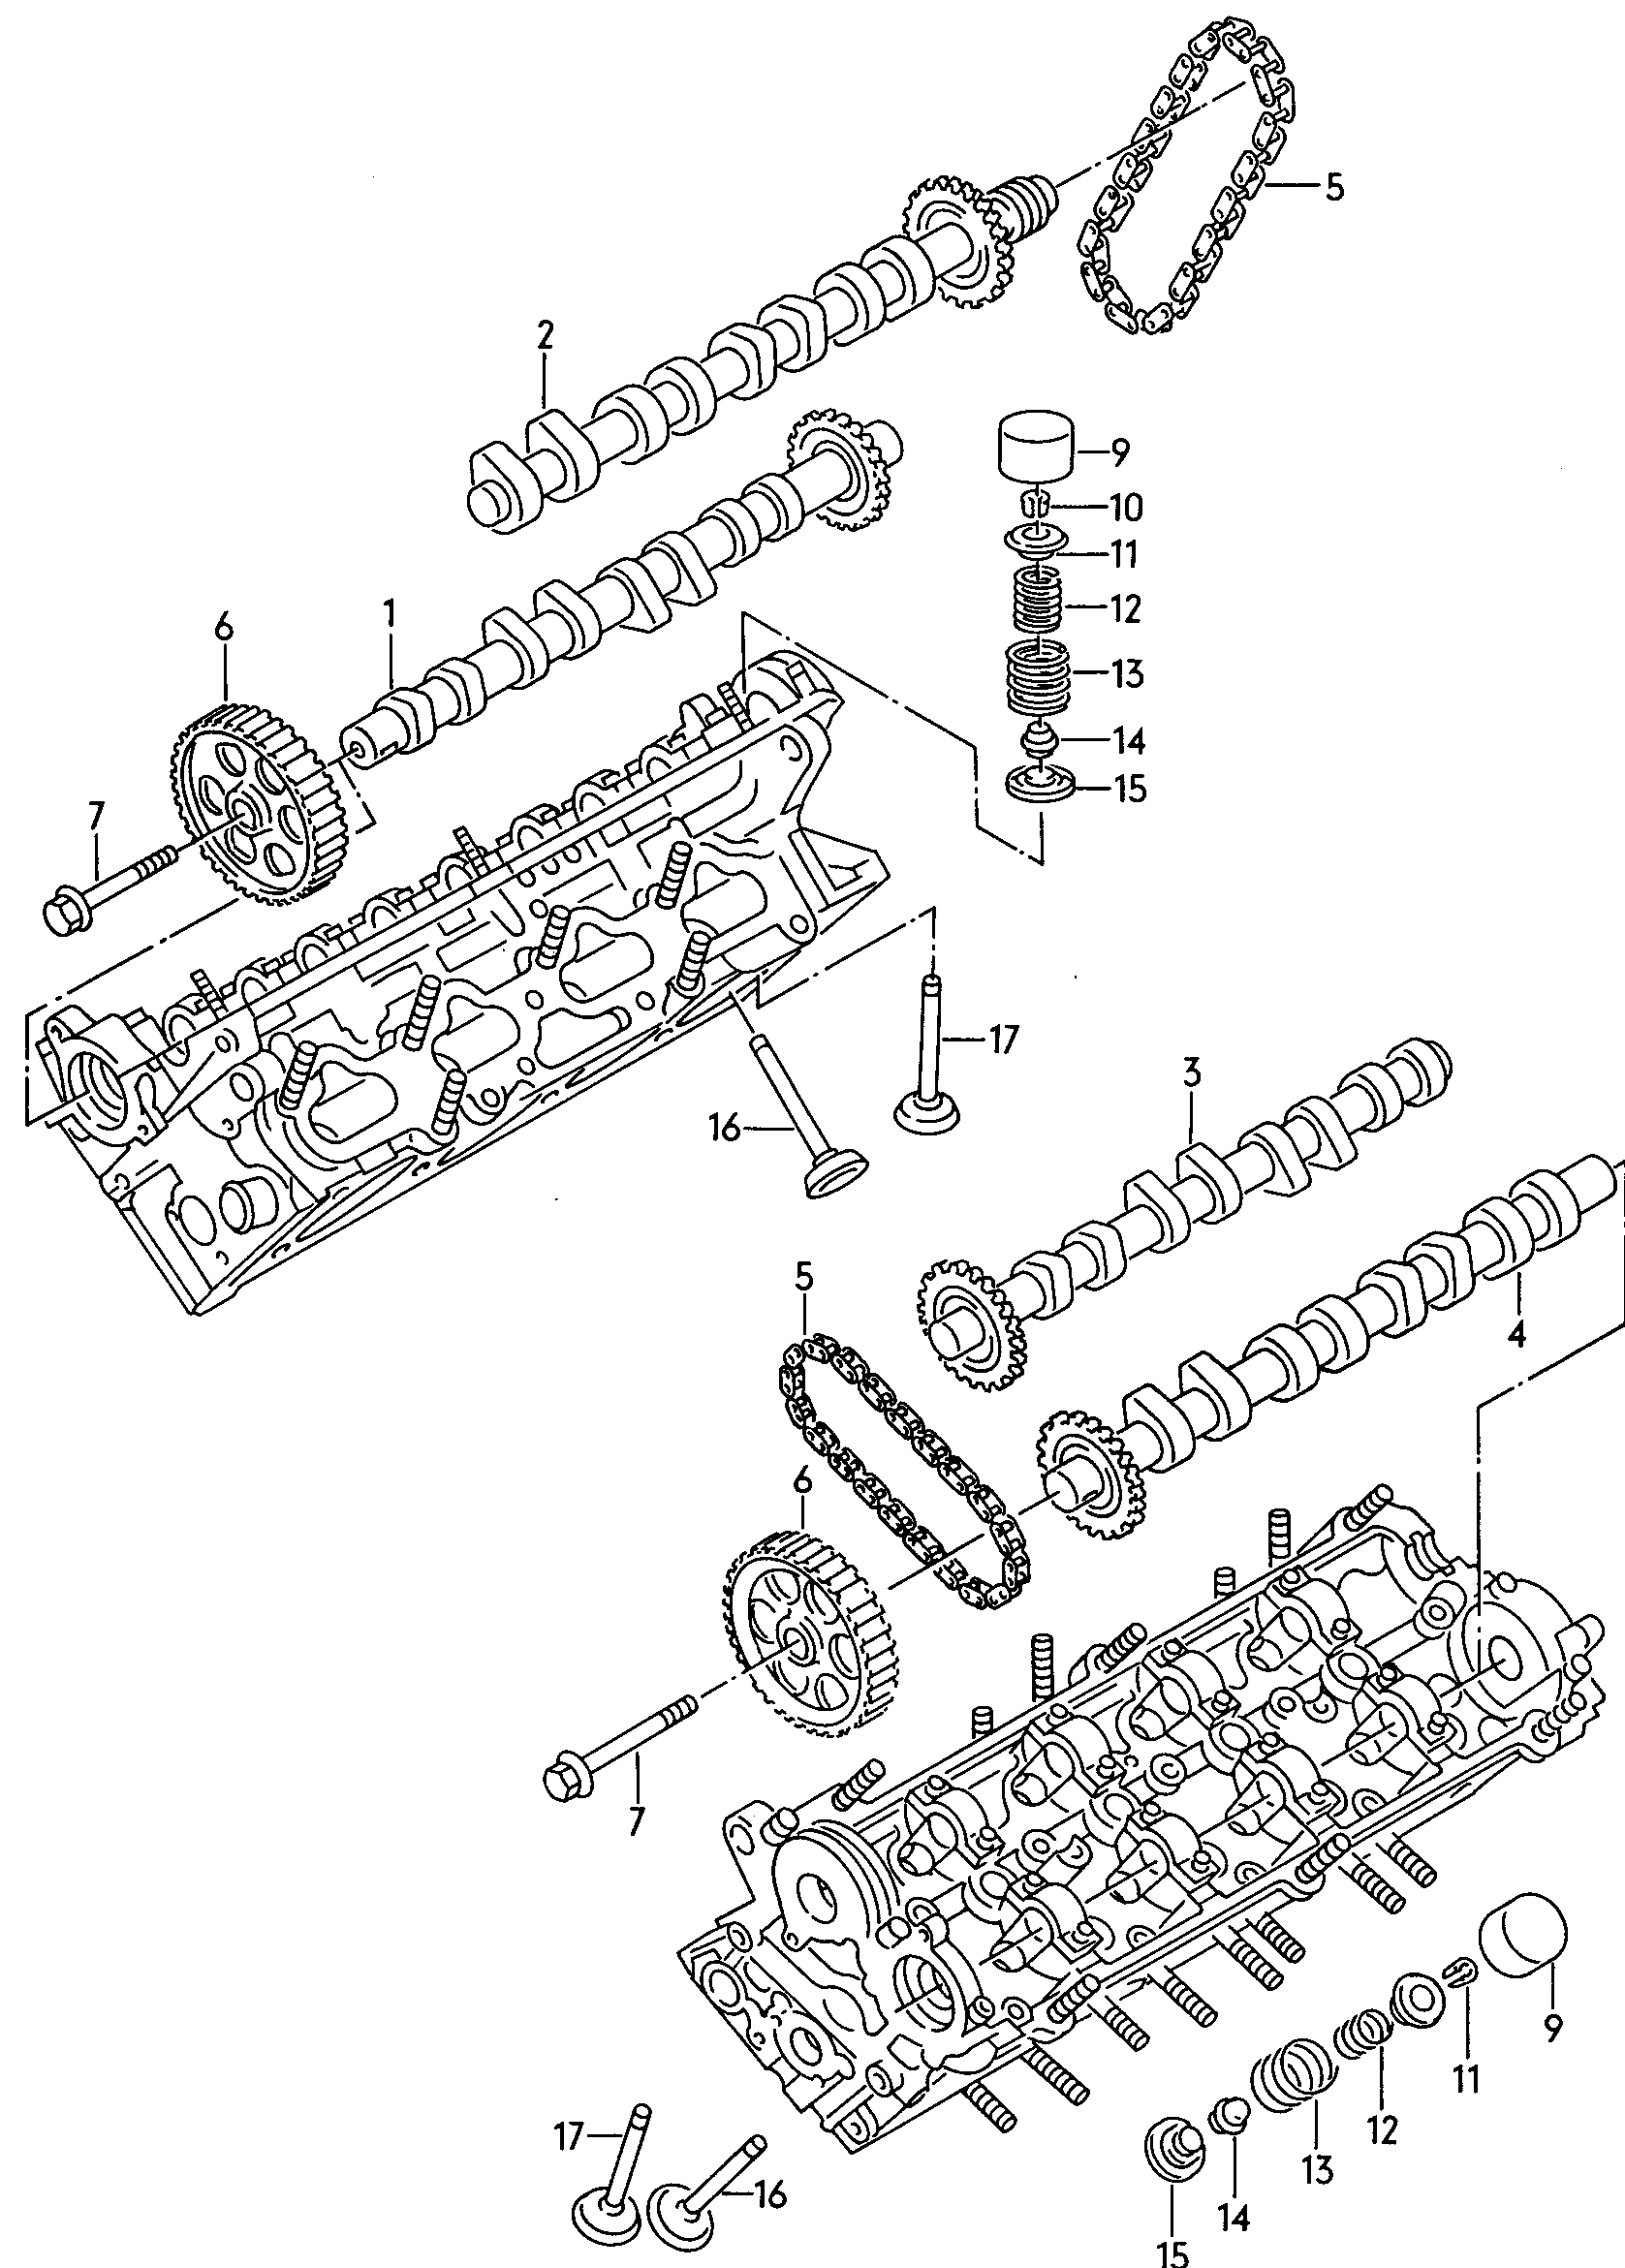 hridel vackovy, ventily; F 4D-T-008 227>>;  - Audi A8/S8 quattro(A8Q)  